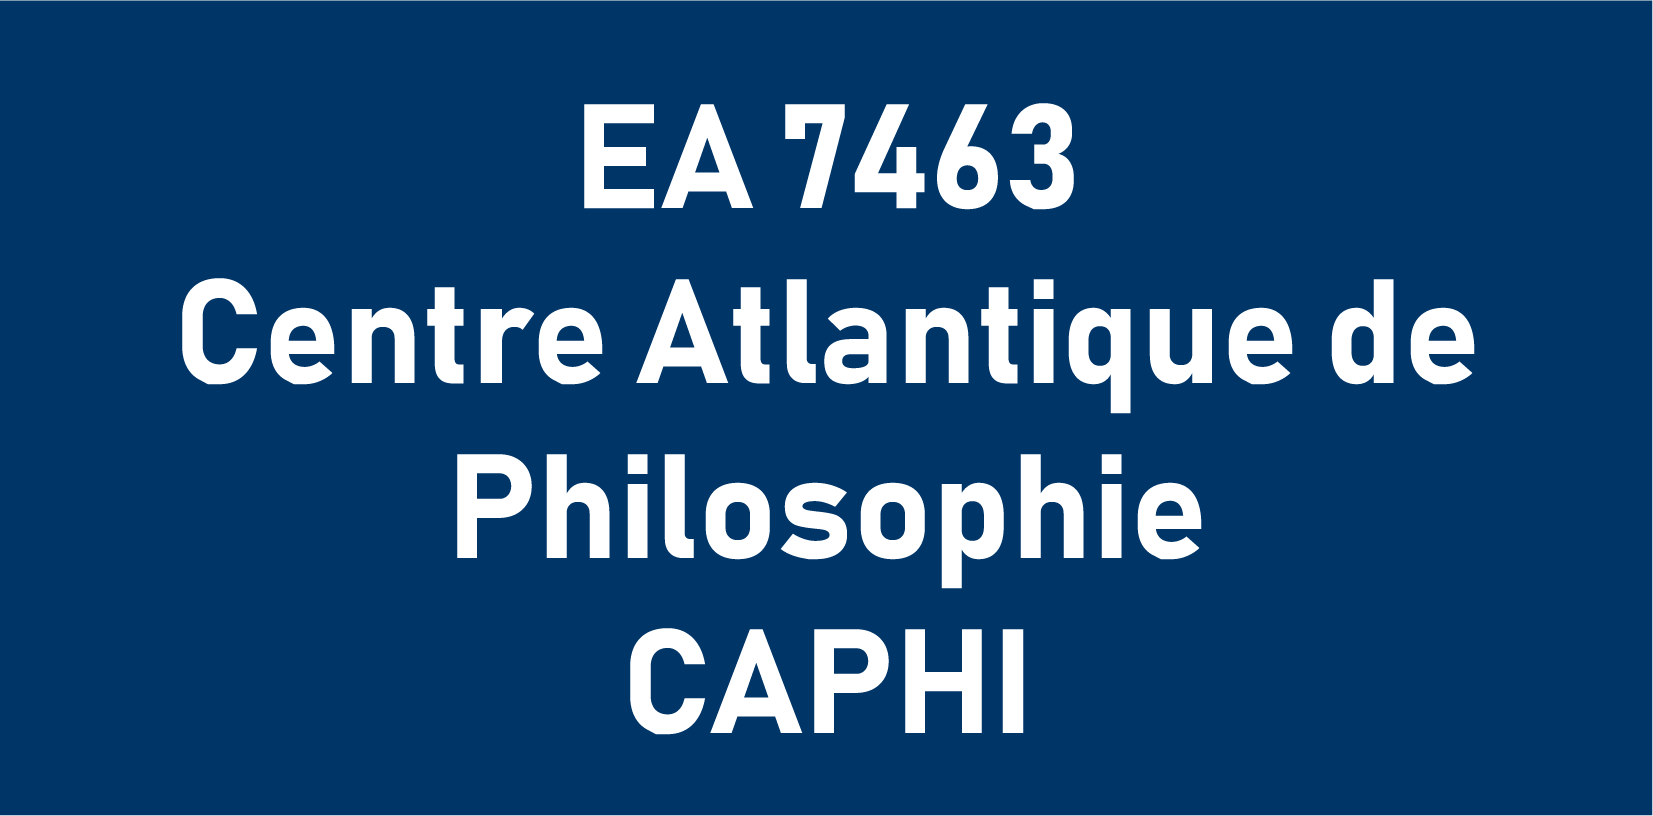 EA 7463 Centre Atlantique de Philosophie CAPHI